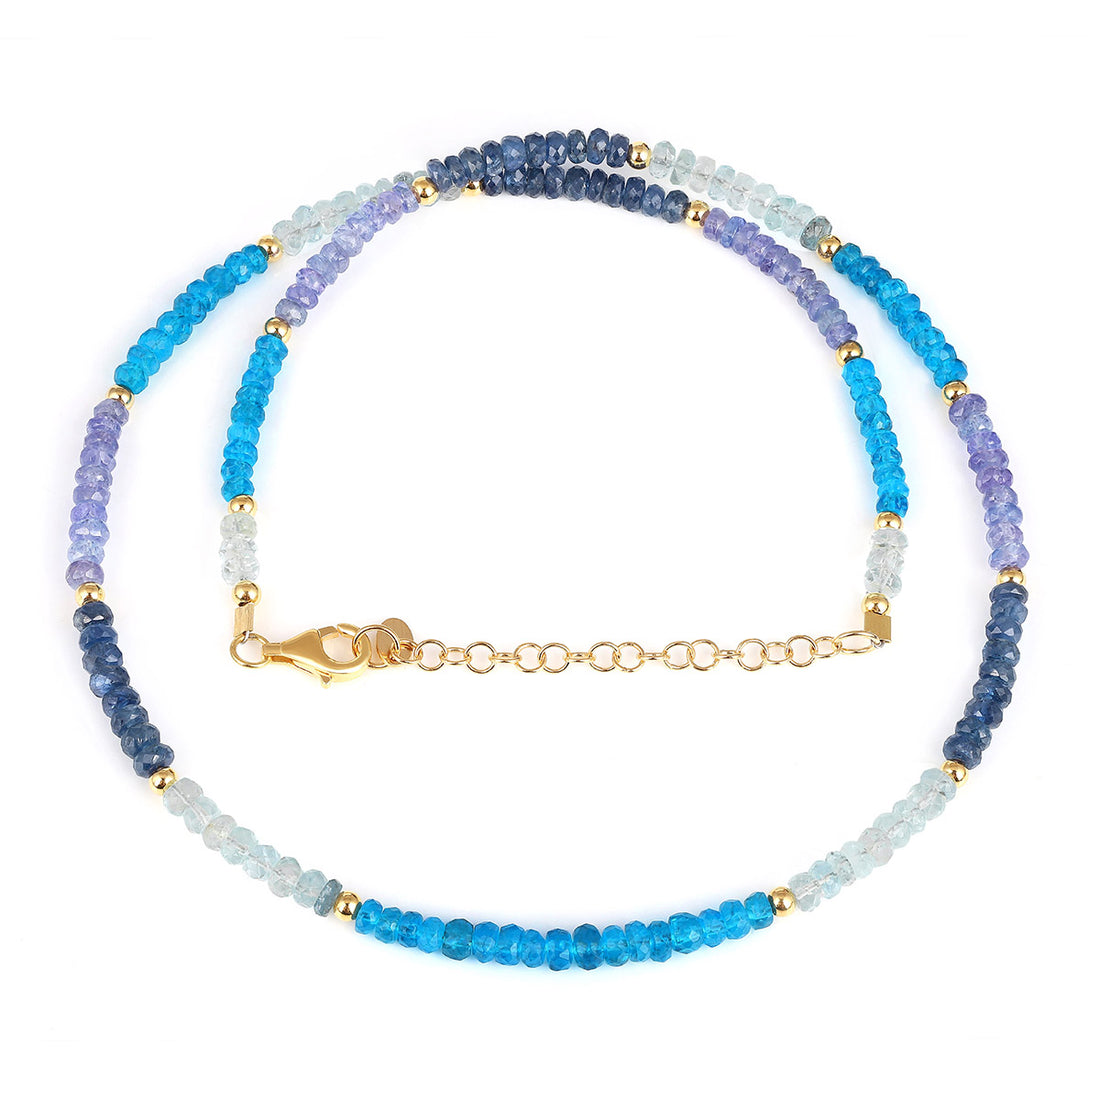 Apatite, Aquamarine, Sapphire and Tanzanite Silver Necklace